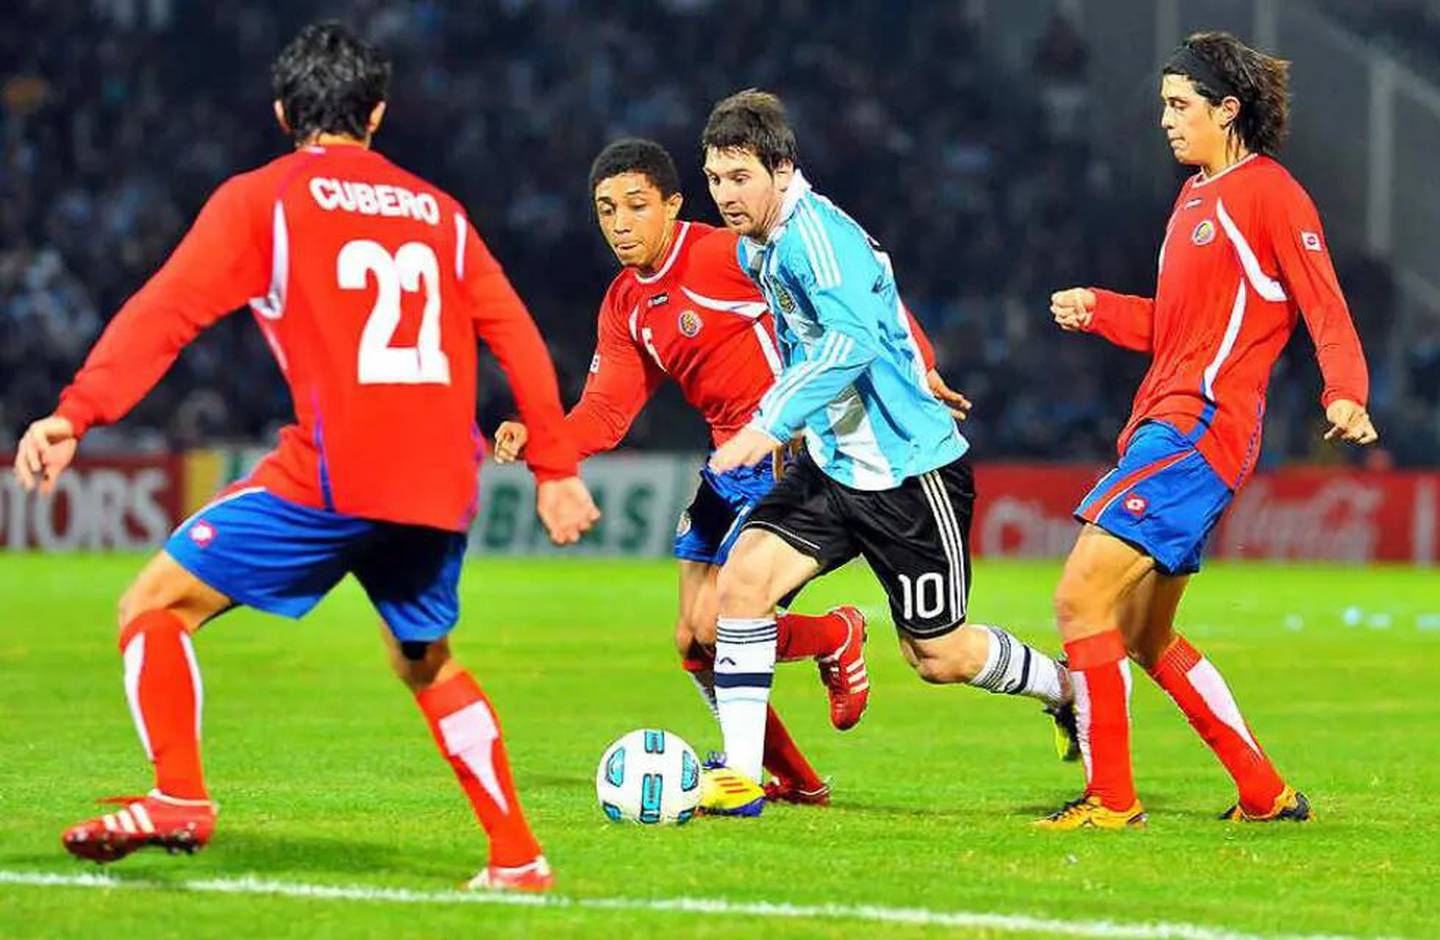 José MIguel Cubero, Lio Messi, Argentina vs Costa Rica